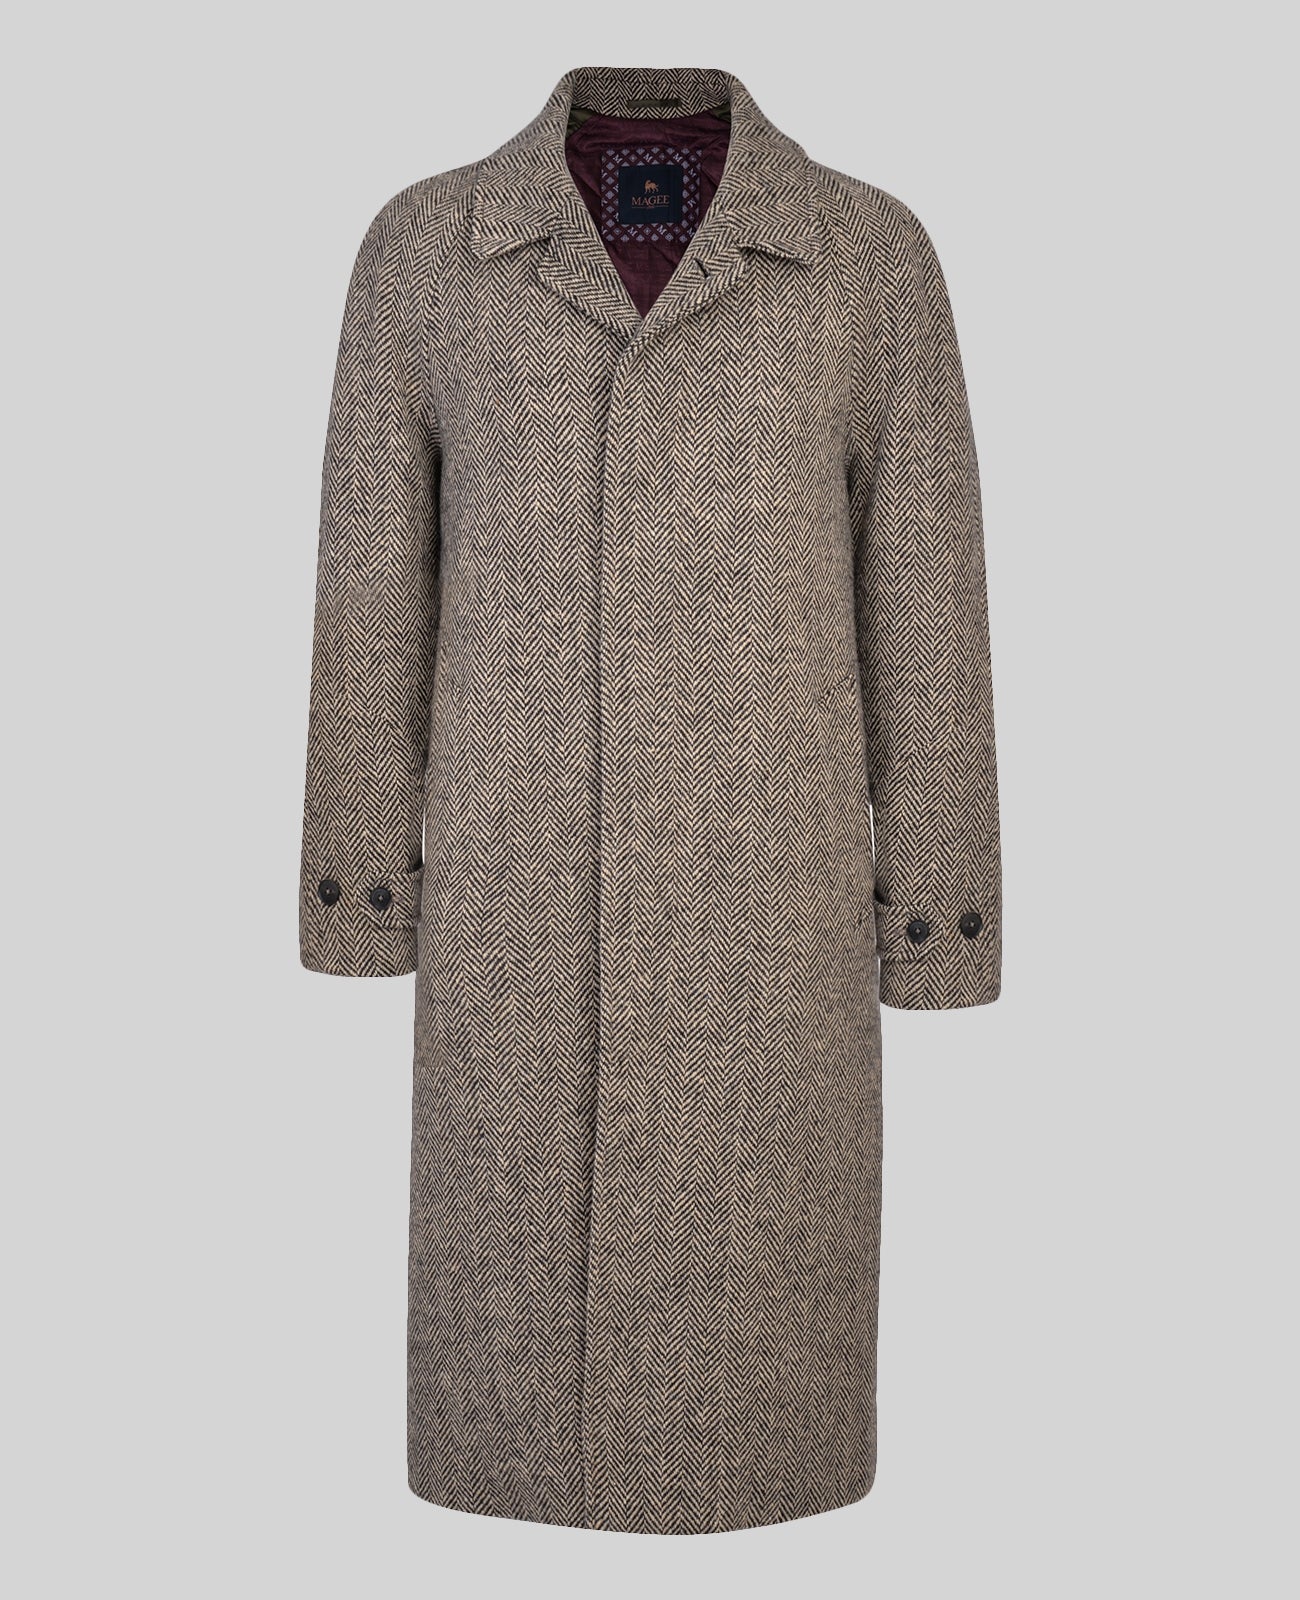 MAGEE Corrib Donegal Tweed Overcoat- Mens - Black & Camel Herringbone